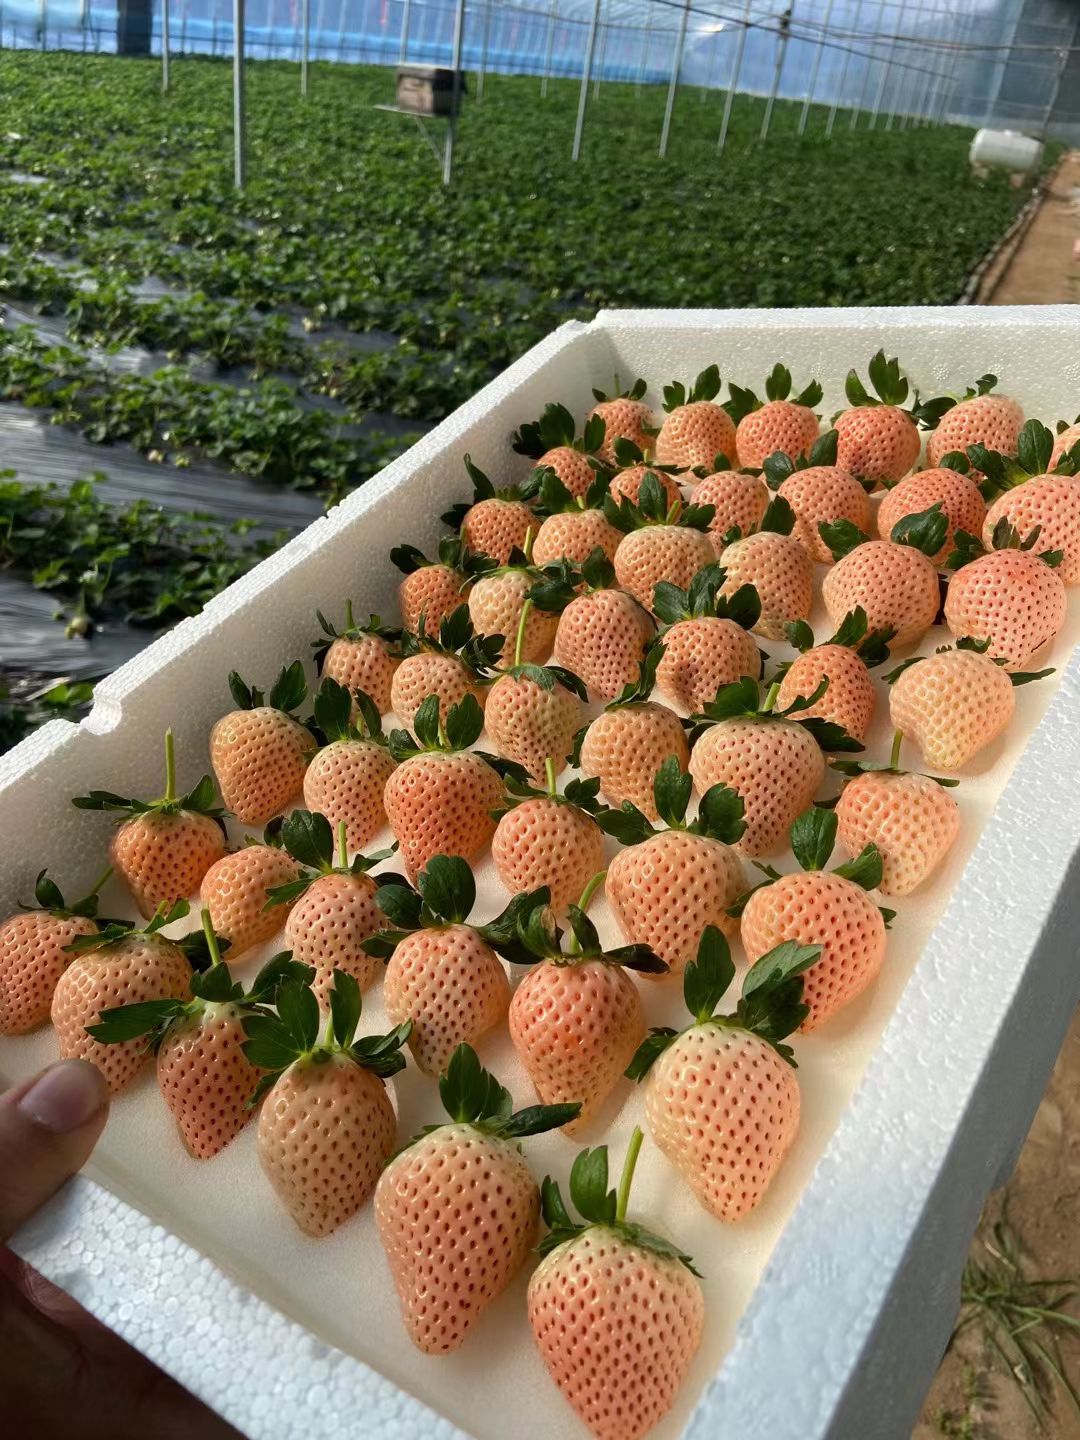 栖霞市淡雪草莓 淡雪天使之爱
橙色白色草莓提供一件代发顺丰空运，